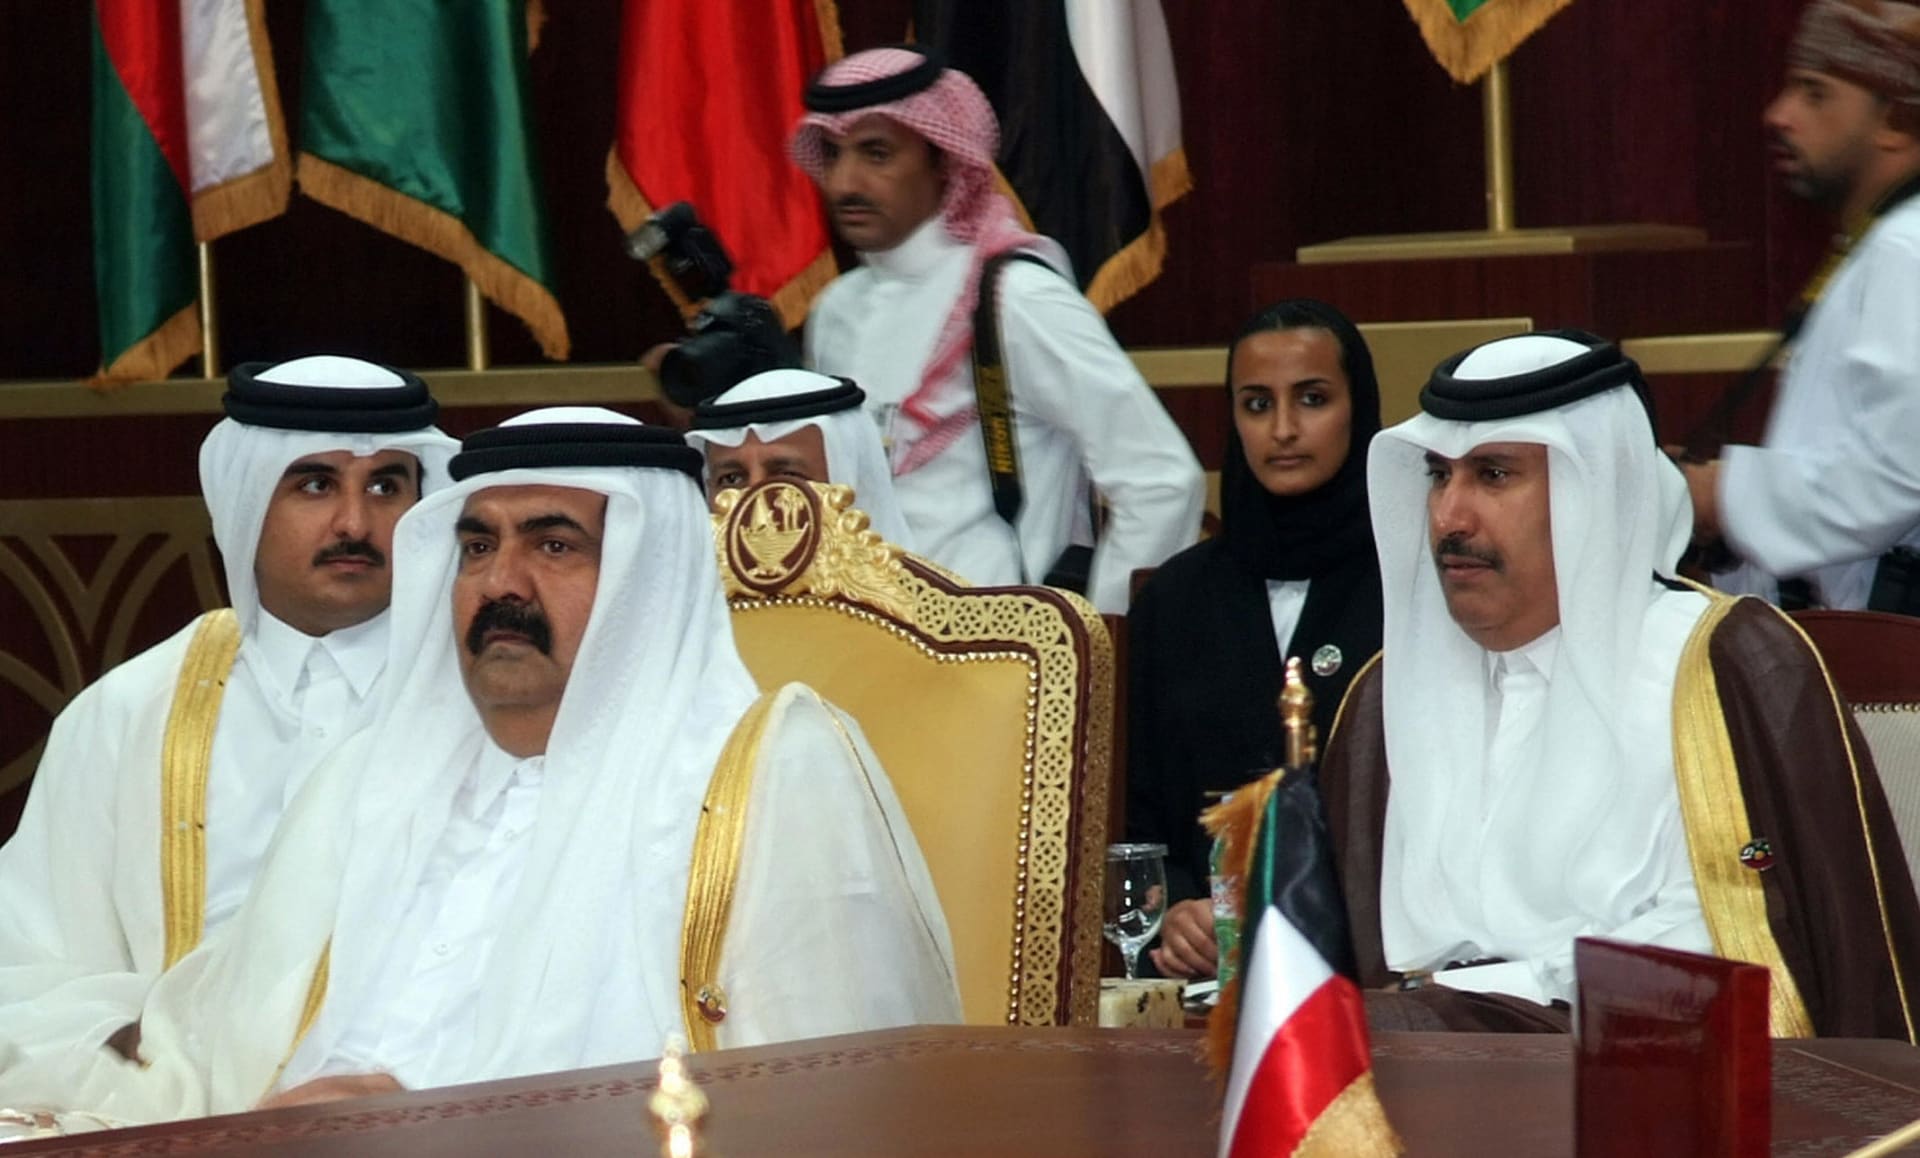 حمد بن جاسم يثير تكهنات بأول تغريدة بعد "محاولة الانقلاب" في قطر